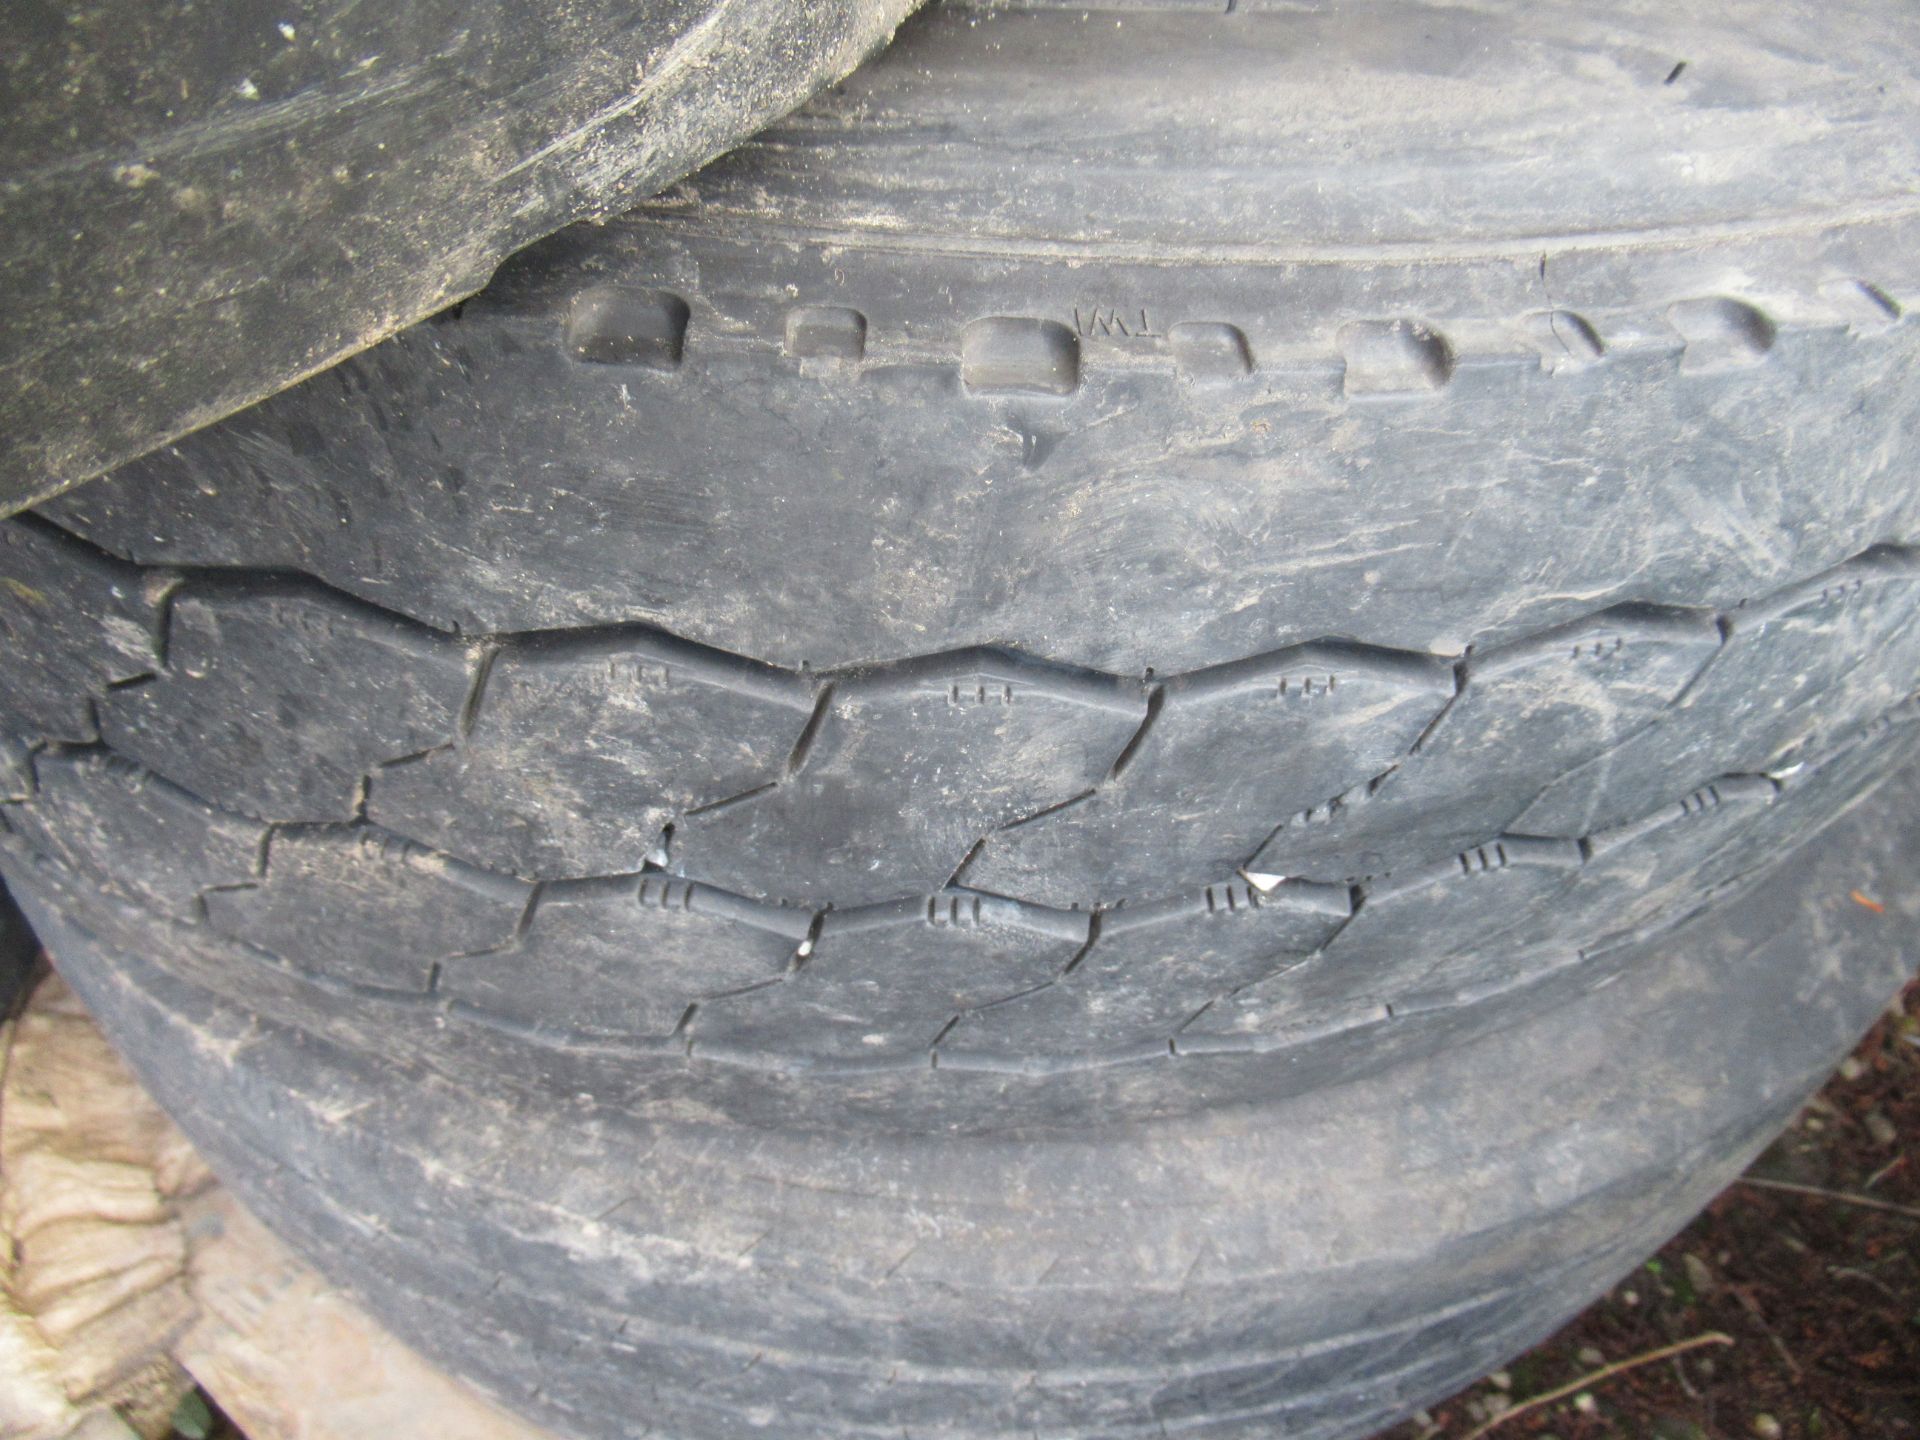 5x Partworn Tyres ( 285/70R/19.5, 245/70R/19.5, 245/70R/19.5, 285/70R/19.5, 245/70R/19.5) - Image 6 of 7